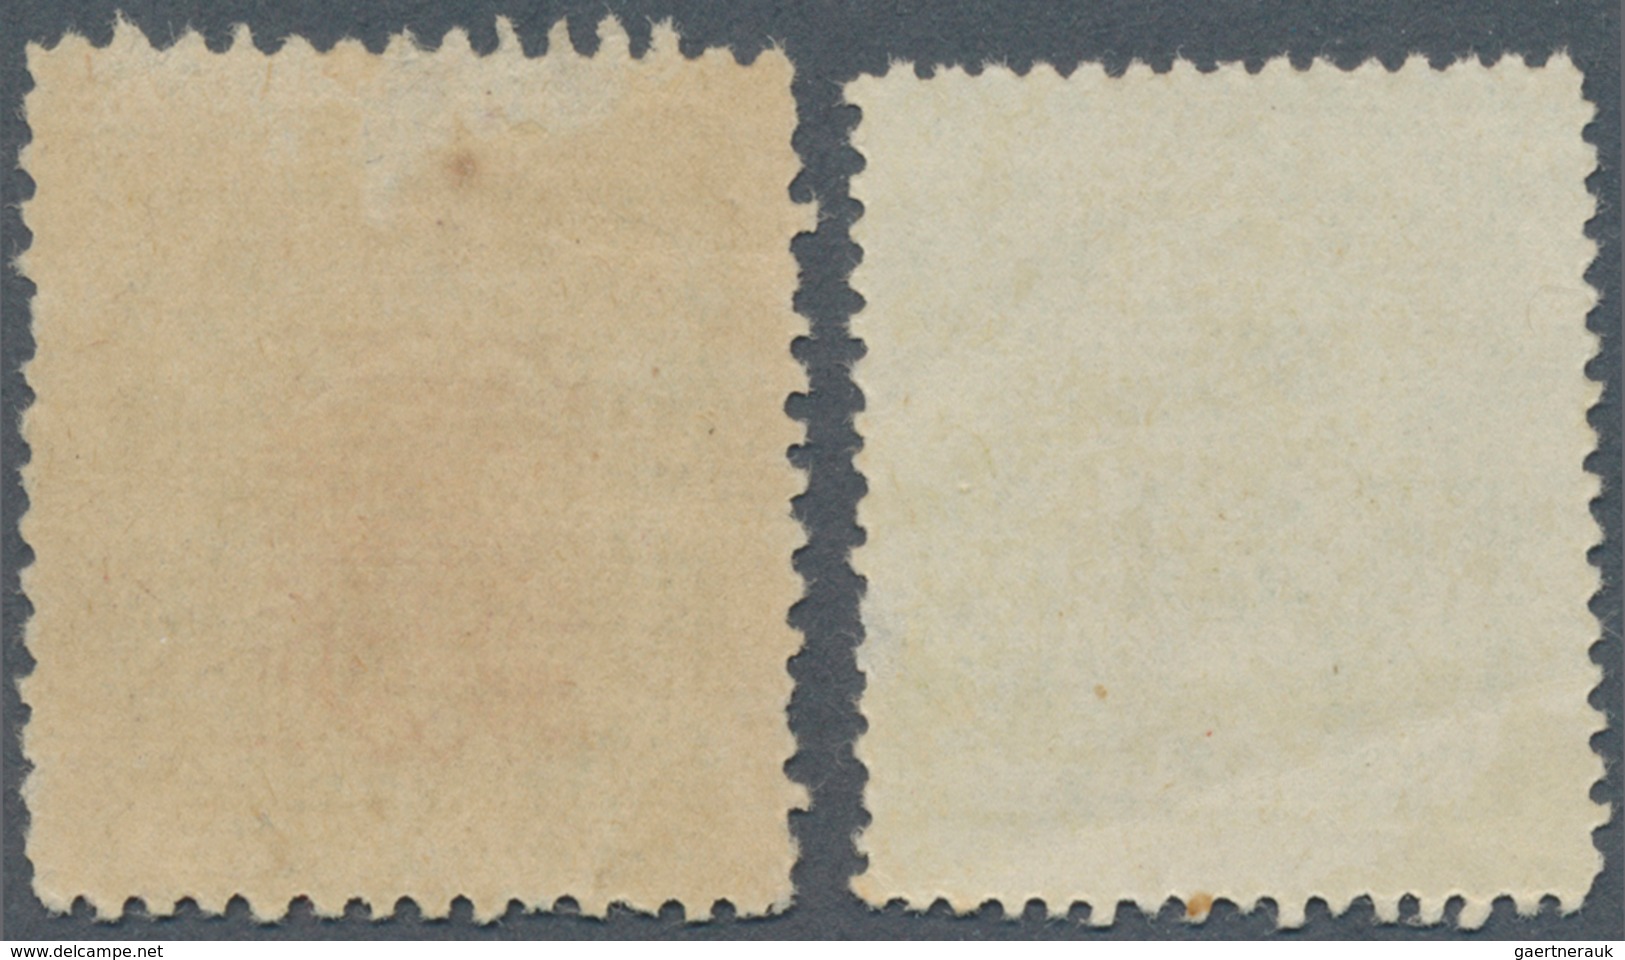 Japanische Besetzung  WK II - Hongkong: 1942 (ca.), Revenue Stamps 10 S. Light Green Resp. 1 Y./10 S - 1941-45 Japanse Bezetting